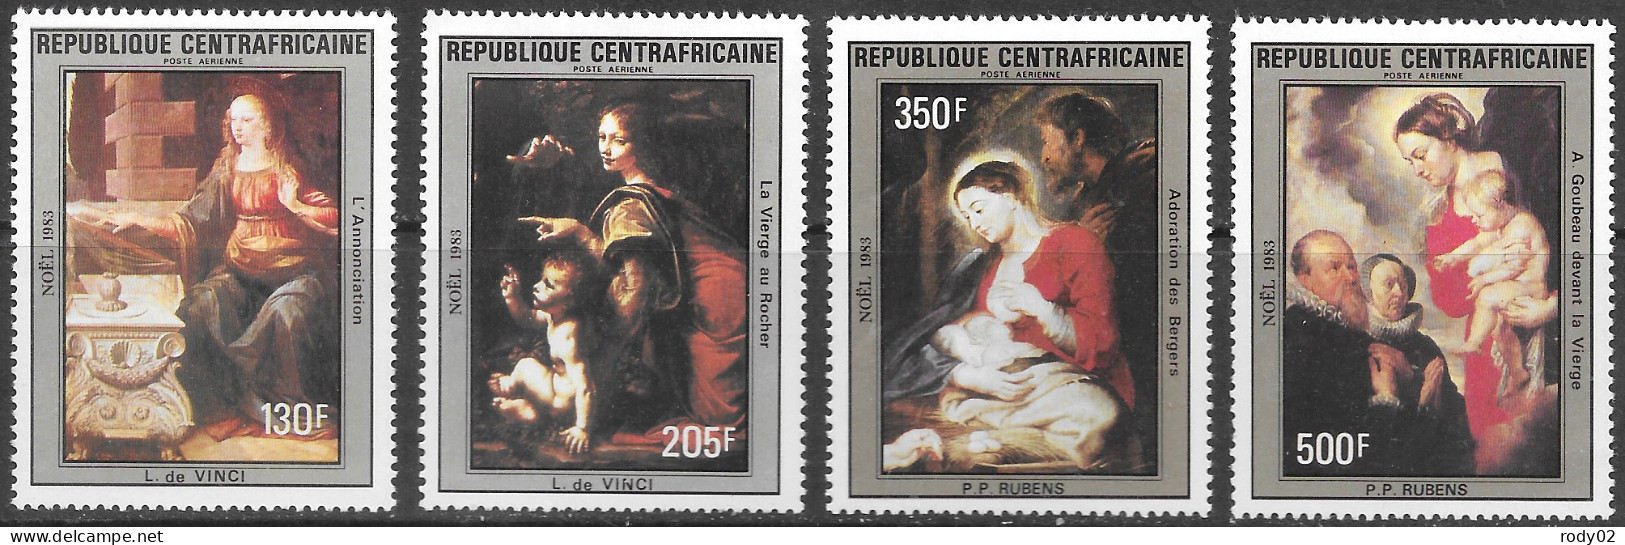 CENTRAFRIQUE - NOEL - TABLEAUX DE LEONARD DE VINCI - PA 294 A 297 - NEUF** MNH - Gemälde